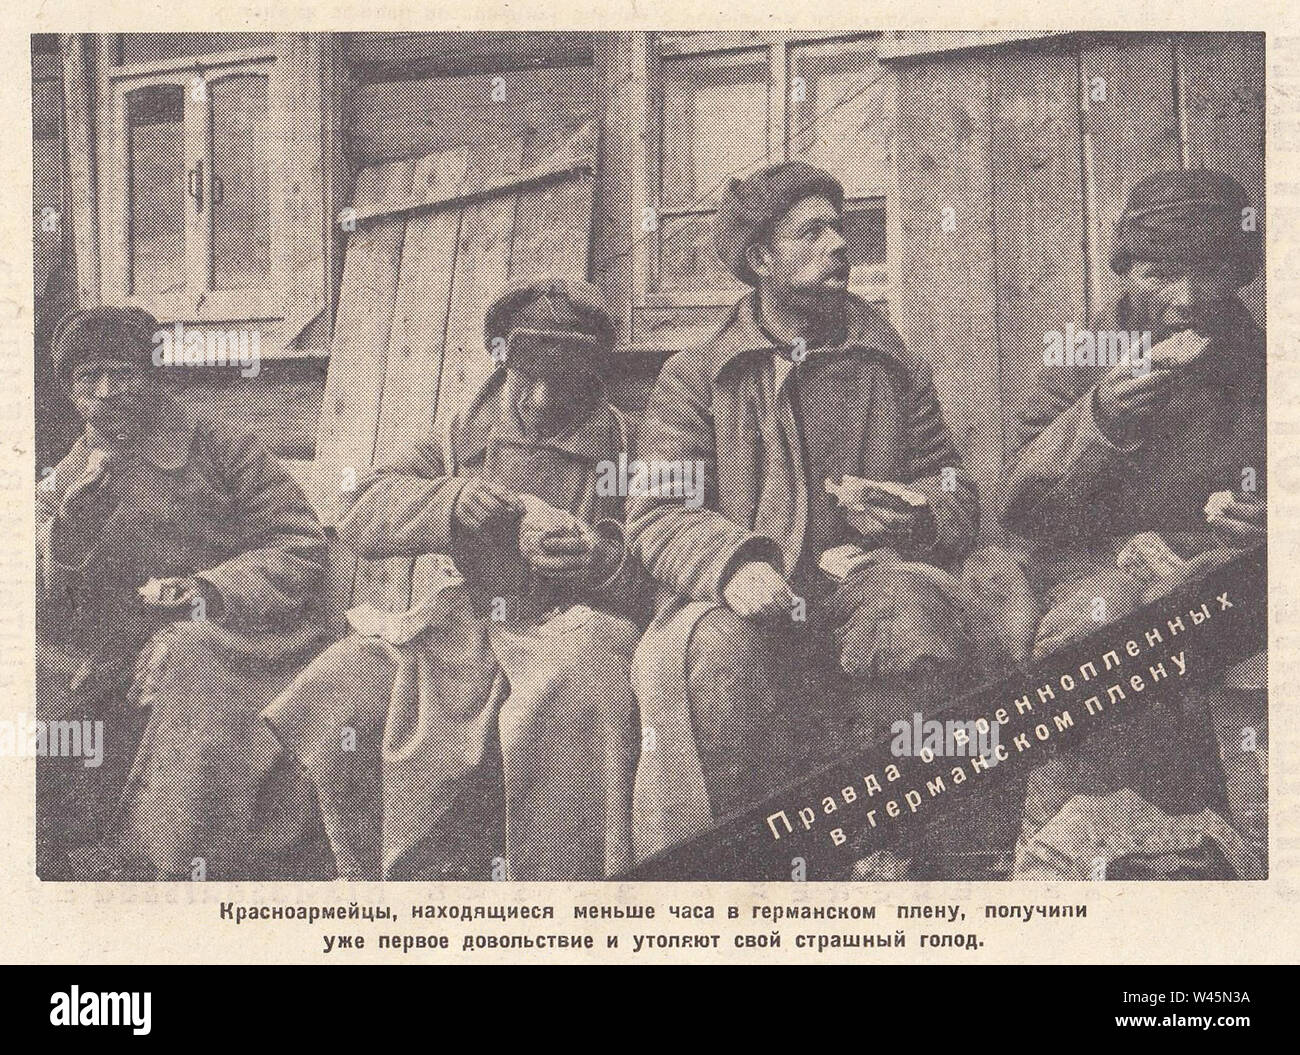 Die Soldaten der Roten Armee, die unter Deutschen Freiheitsstrafe von weniger als einer Stunde waren, hatten bereits ihre ersten Zulage erhalten und ihre schrecklichen Hunger zufrieden. Die Wahrheit über Kriegsgefangene in deutscher Gefangenschaft. Foto aus der Zeitung von den 1940er Jahren. Stockfoto